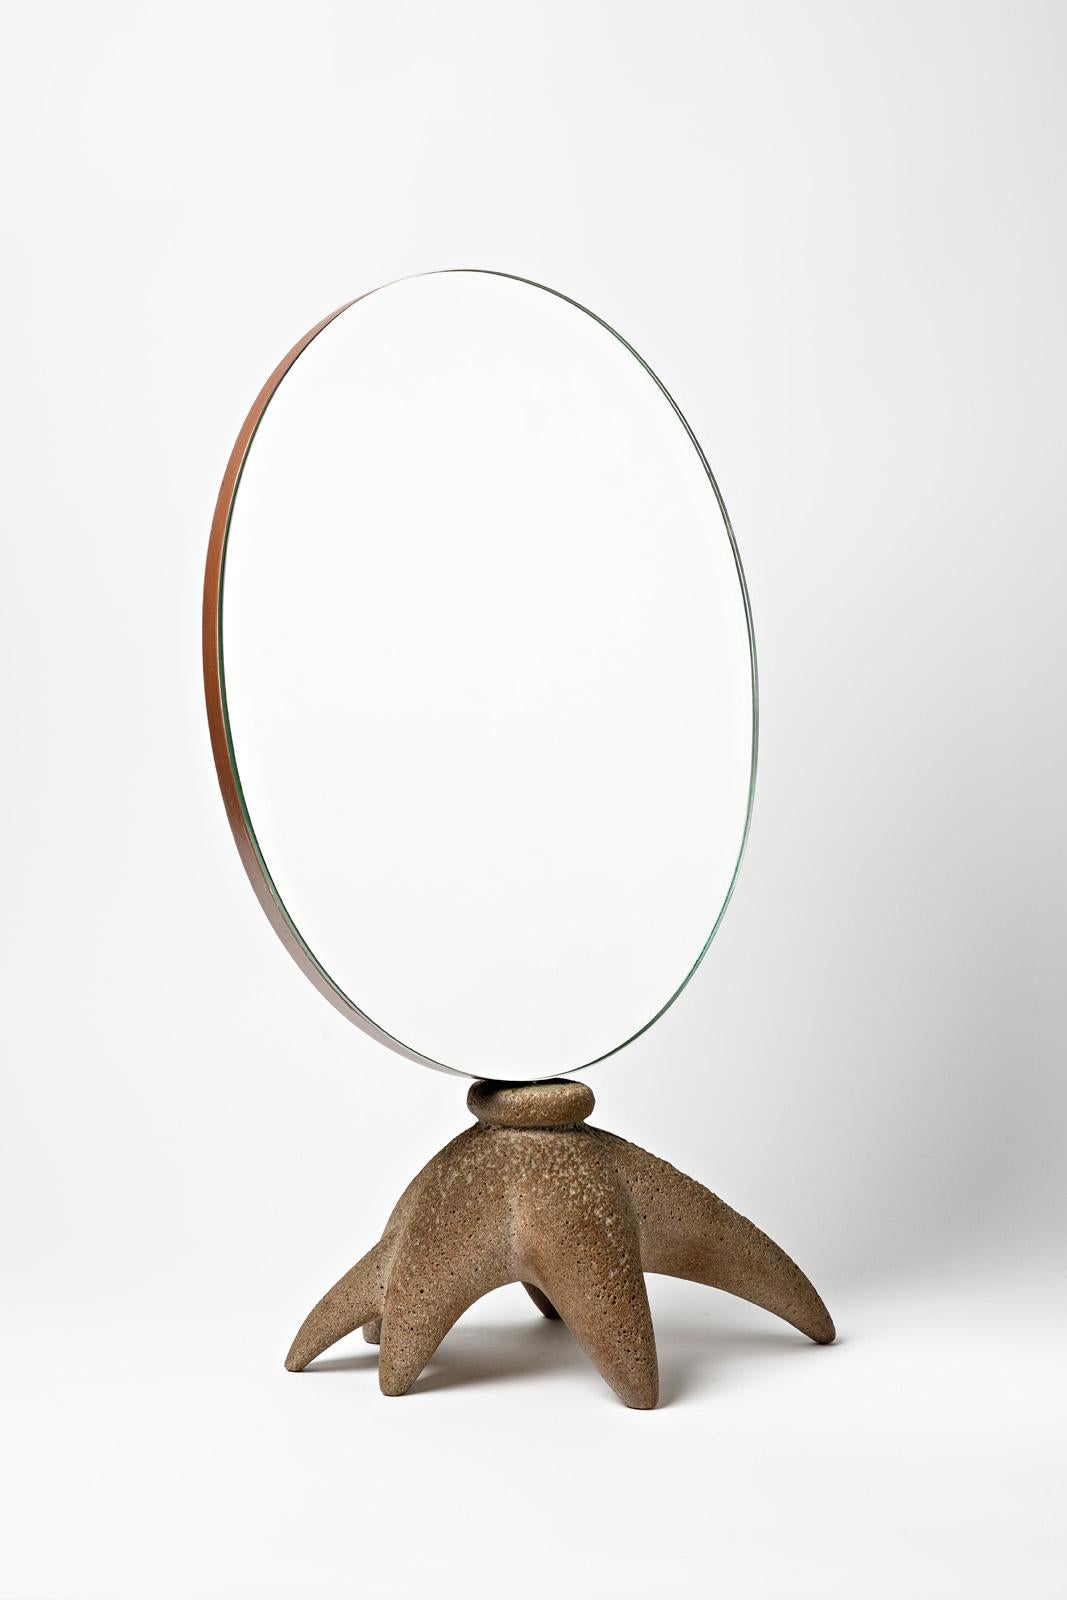 Nach dem Vorbild von Garouste und Bonetti

Paar große Tischspiegel, realisiert um 1980

Spiegelsockel aus Harz

Originaldekoration aus dem 20. 

Höhe 58
Groß 35 cm
Tiefe 20 cm